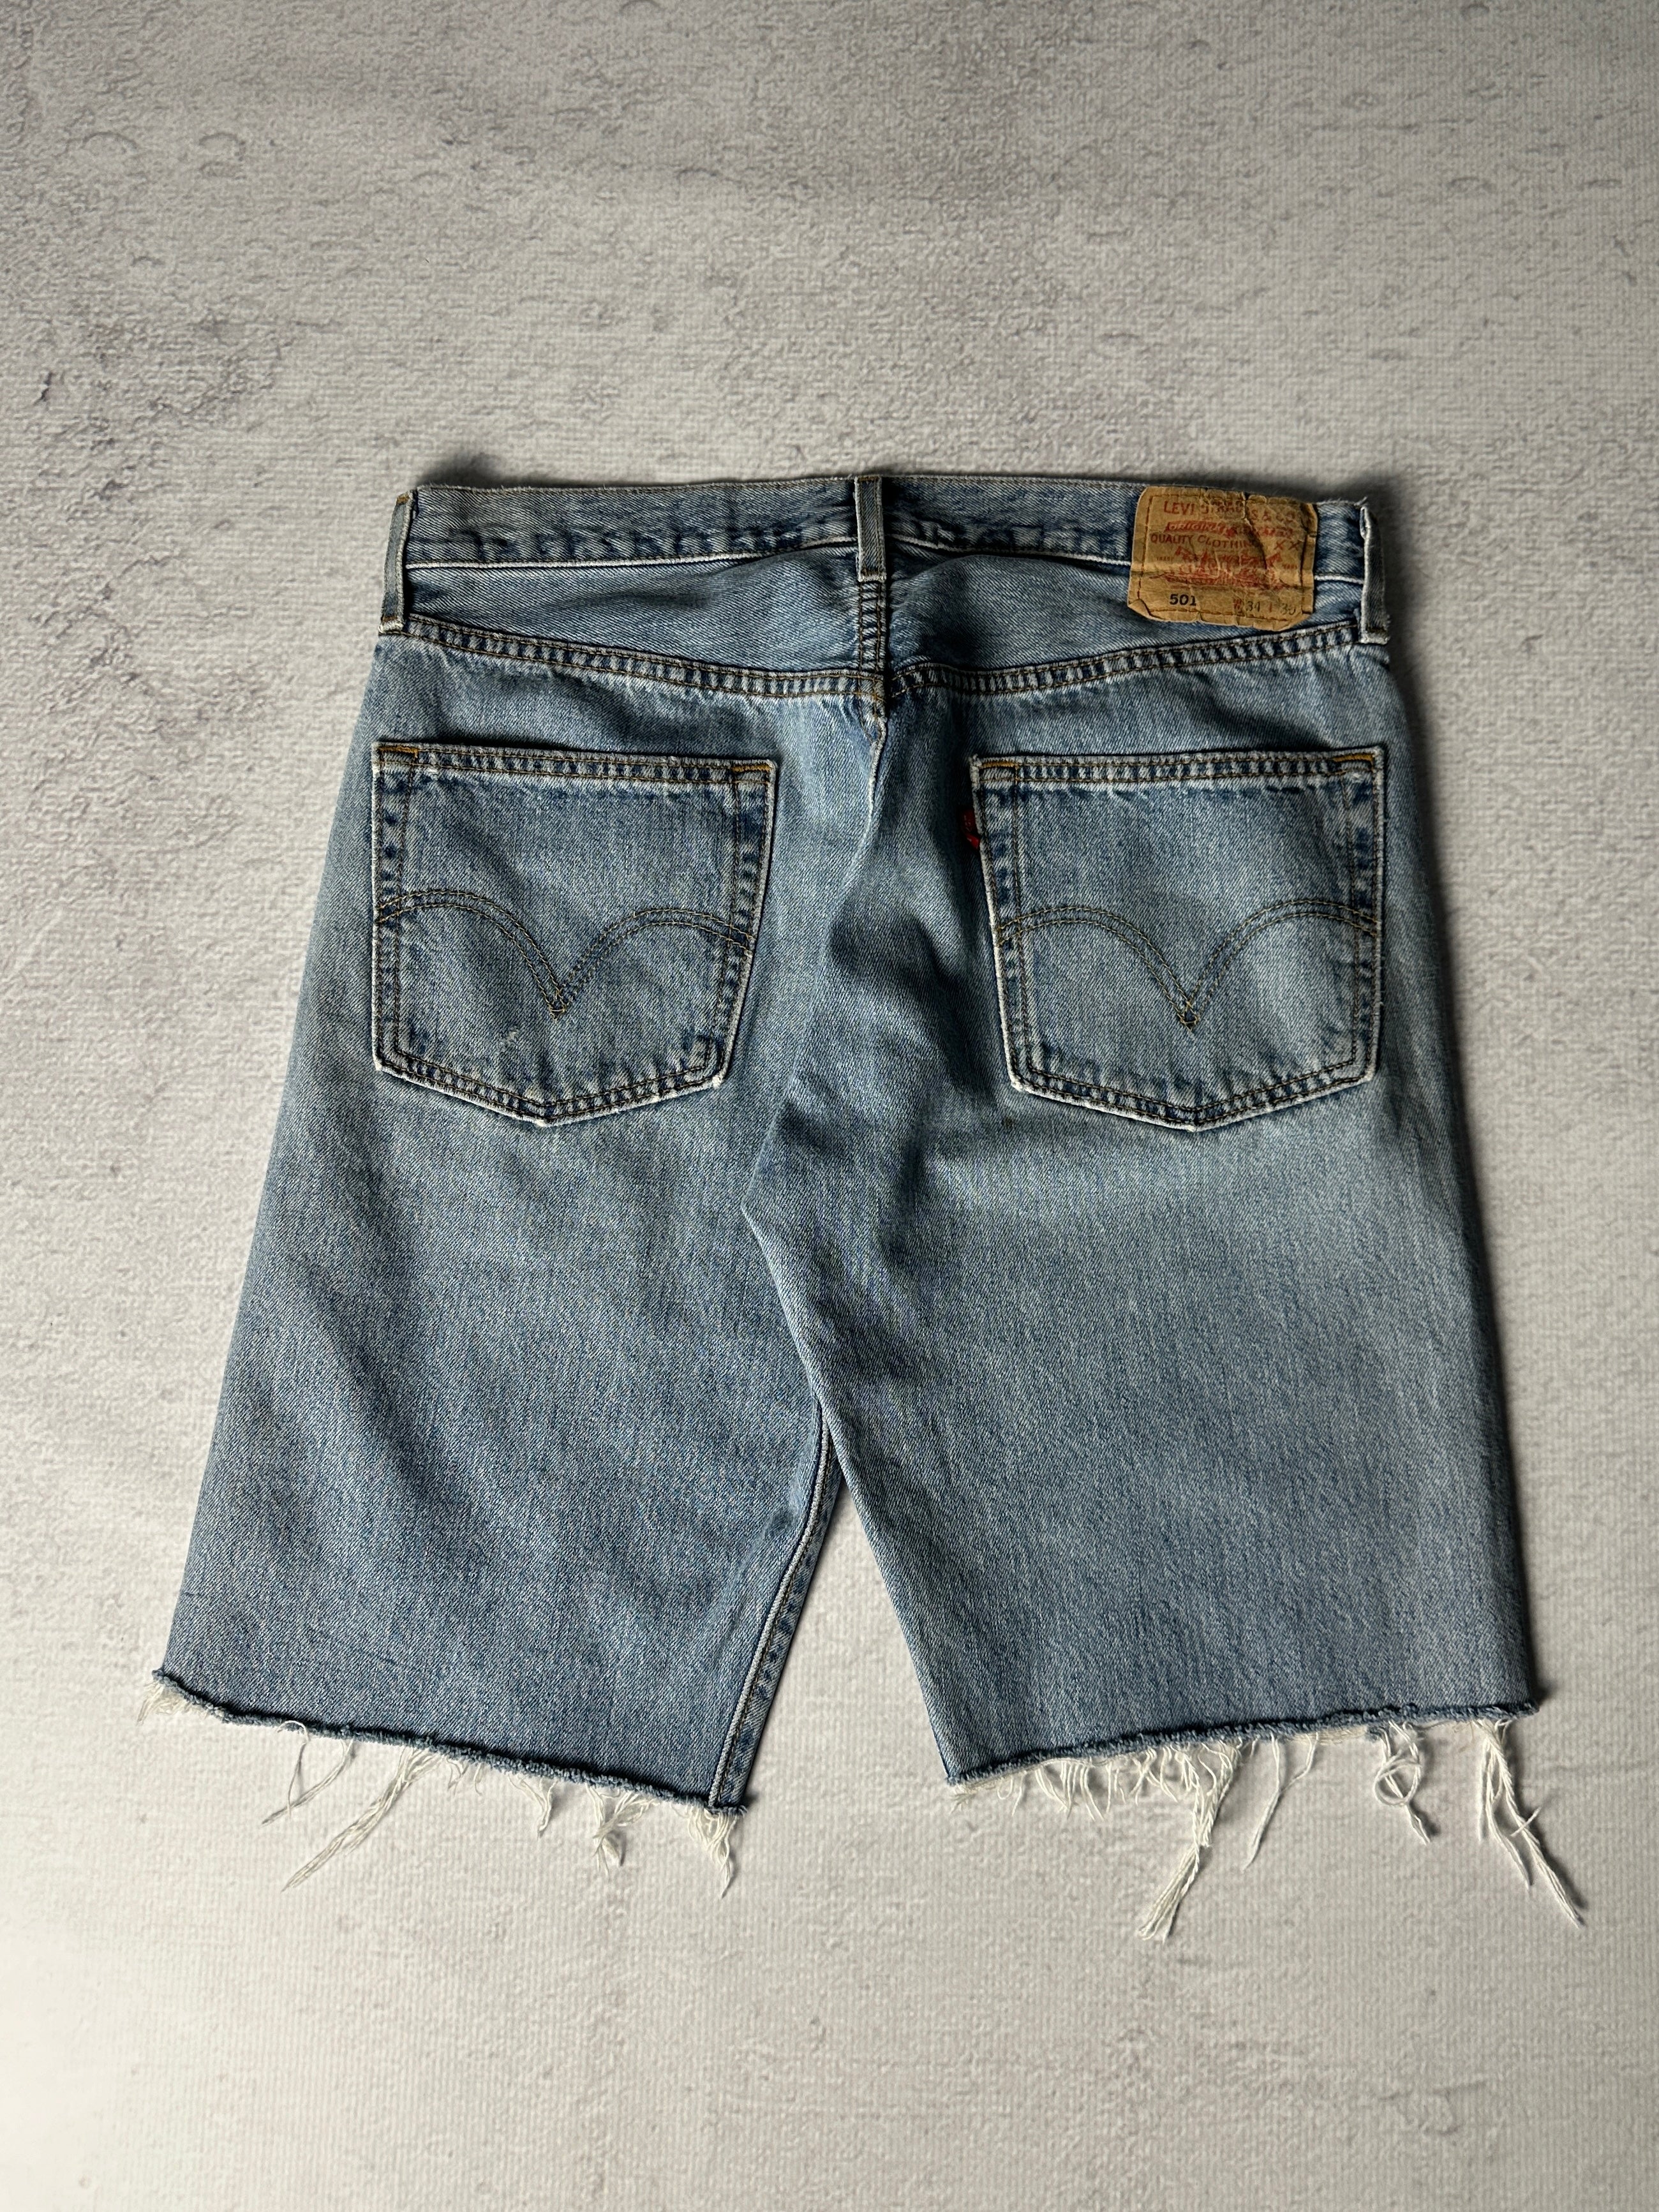 Vintage Levis 501 Distressed Jean Shorts - Men's 32W11L